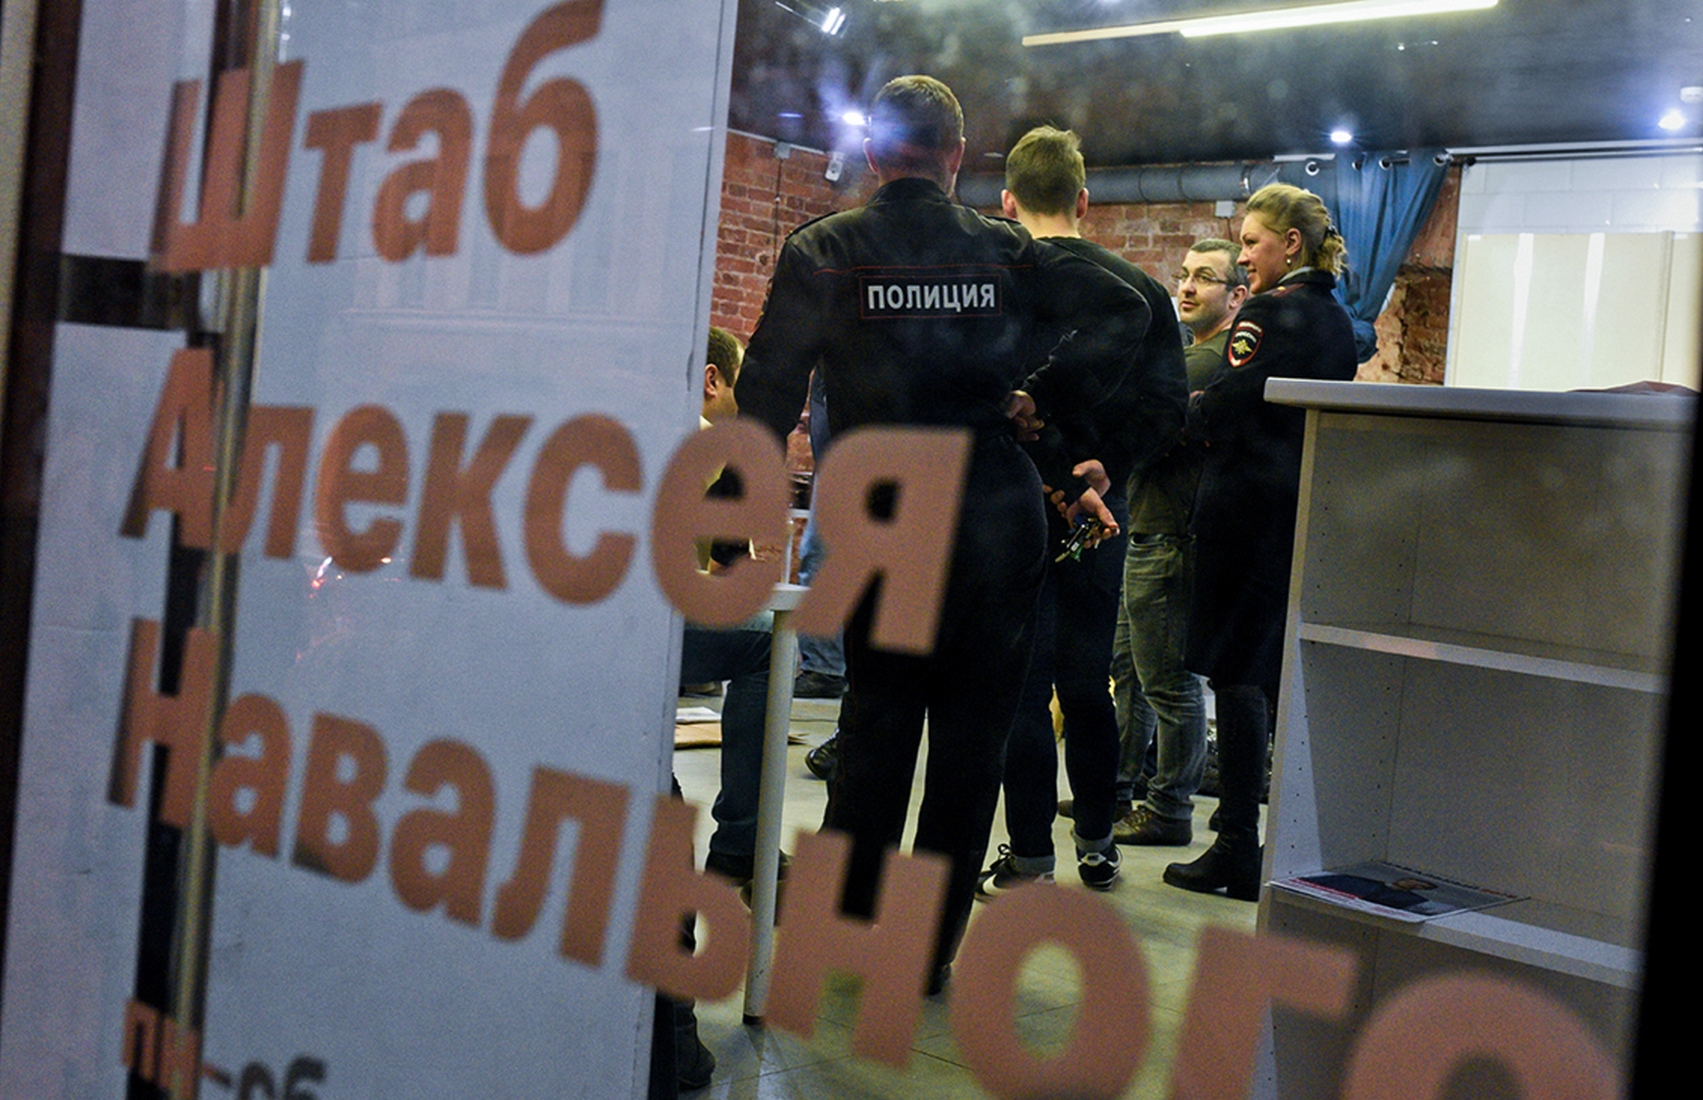 ФБК и штабы Навального могут признать экстремистскими организациями